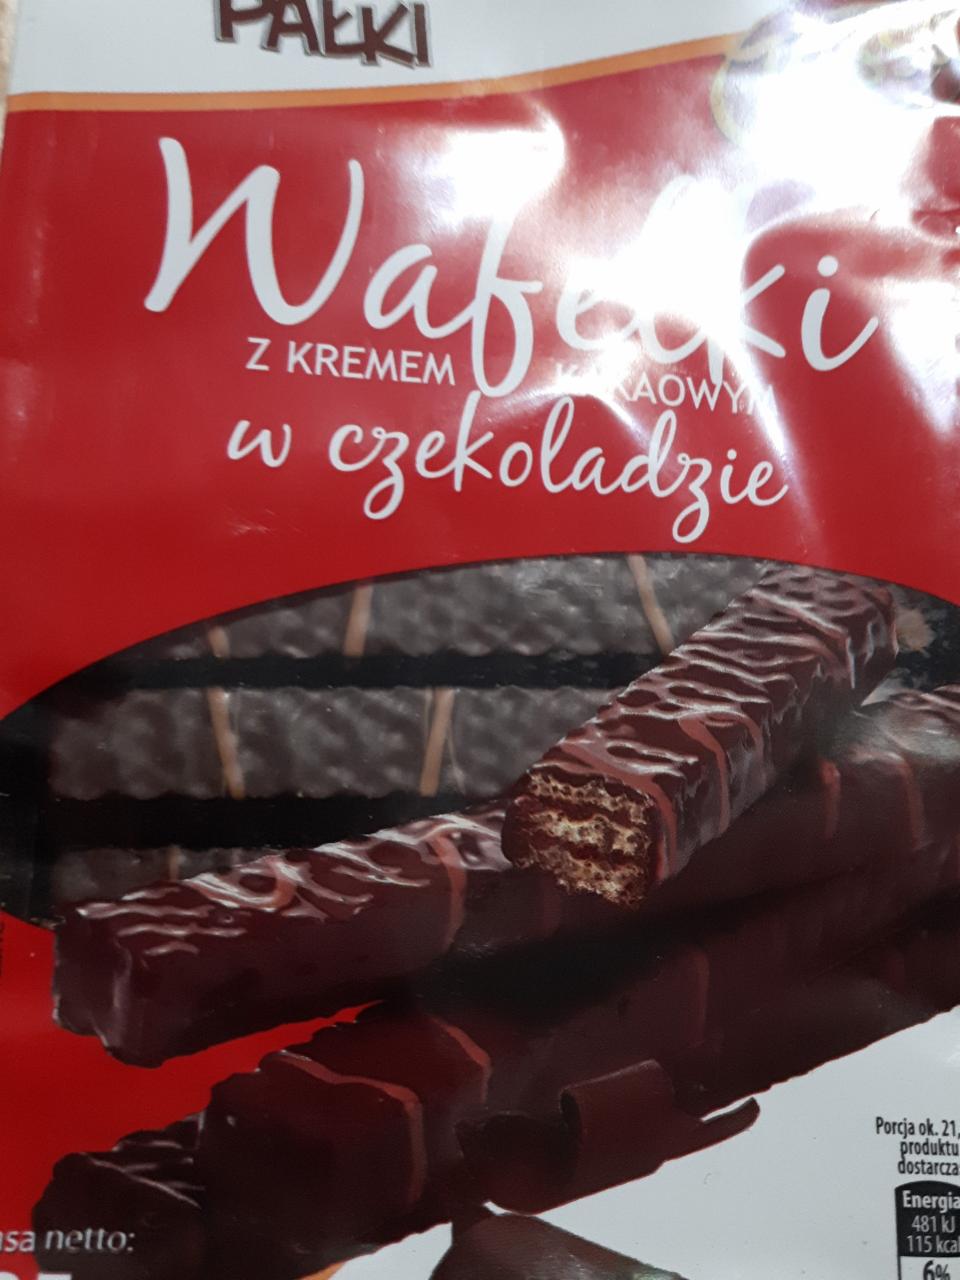 Фото - Вафлі Wafelki з какао-кремом в шоколаді Tasso